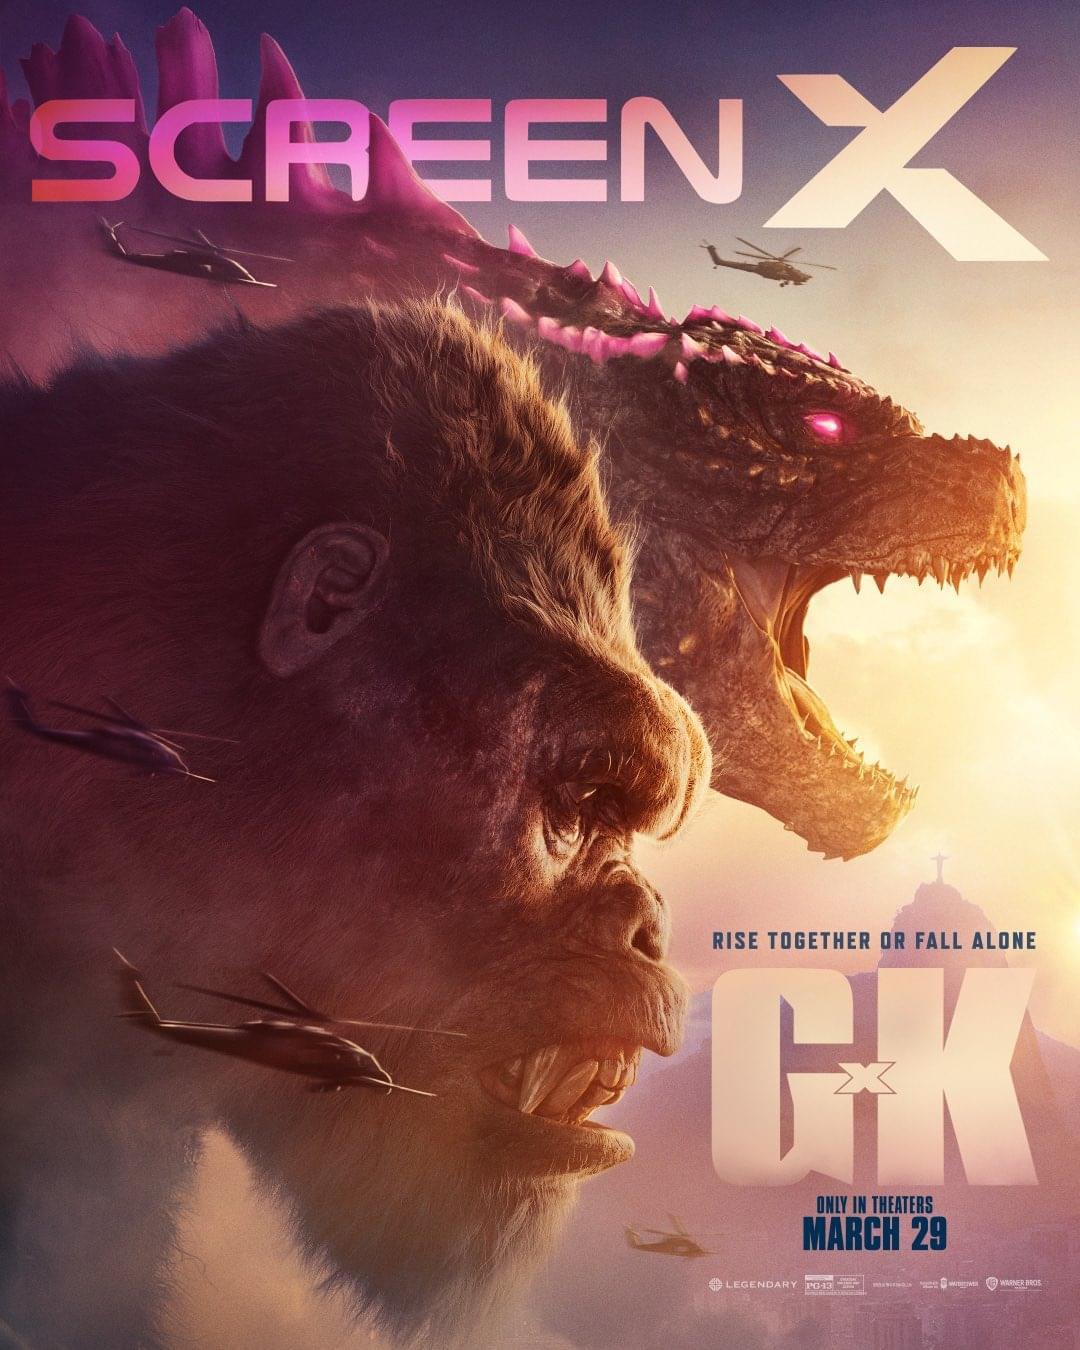 Godzilla x Kong ScreenX Poster